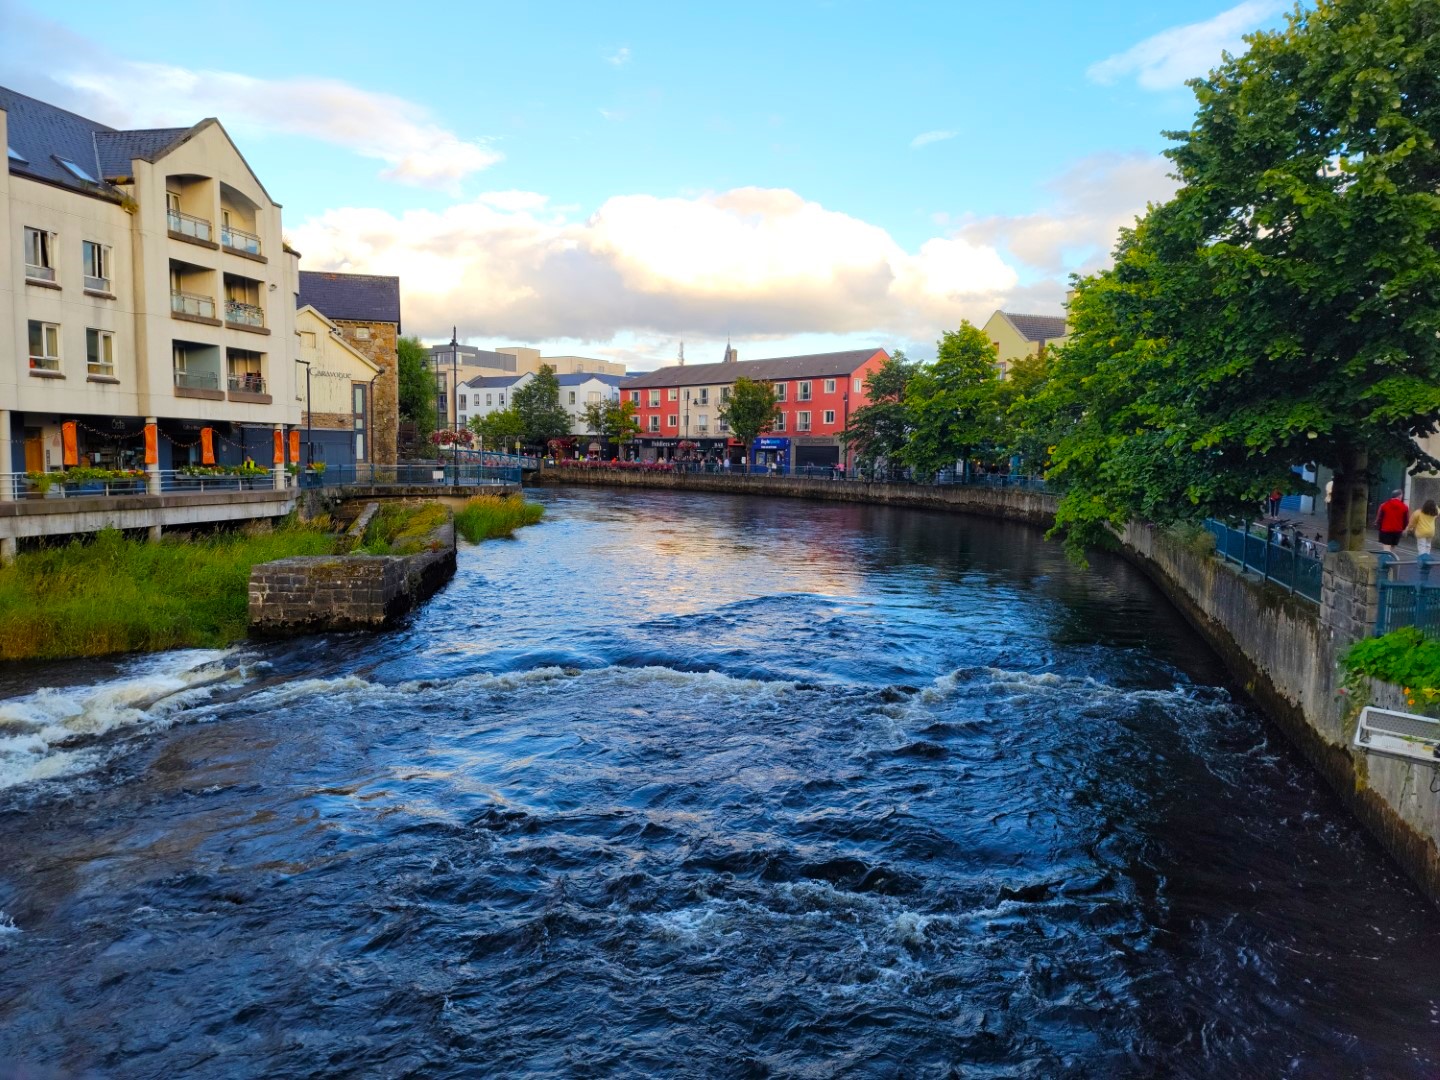 Sligo city views